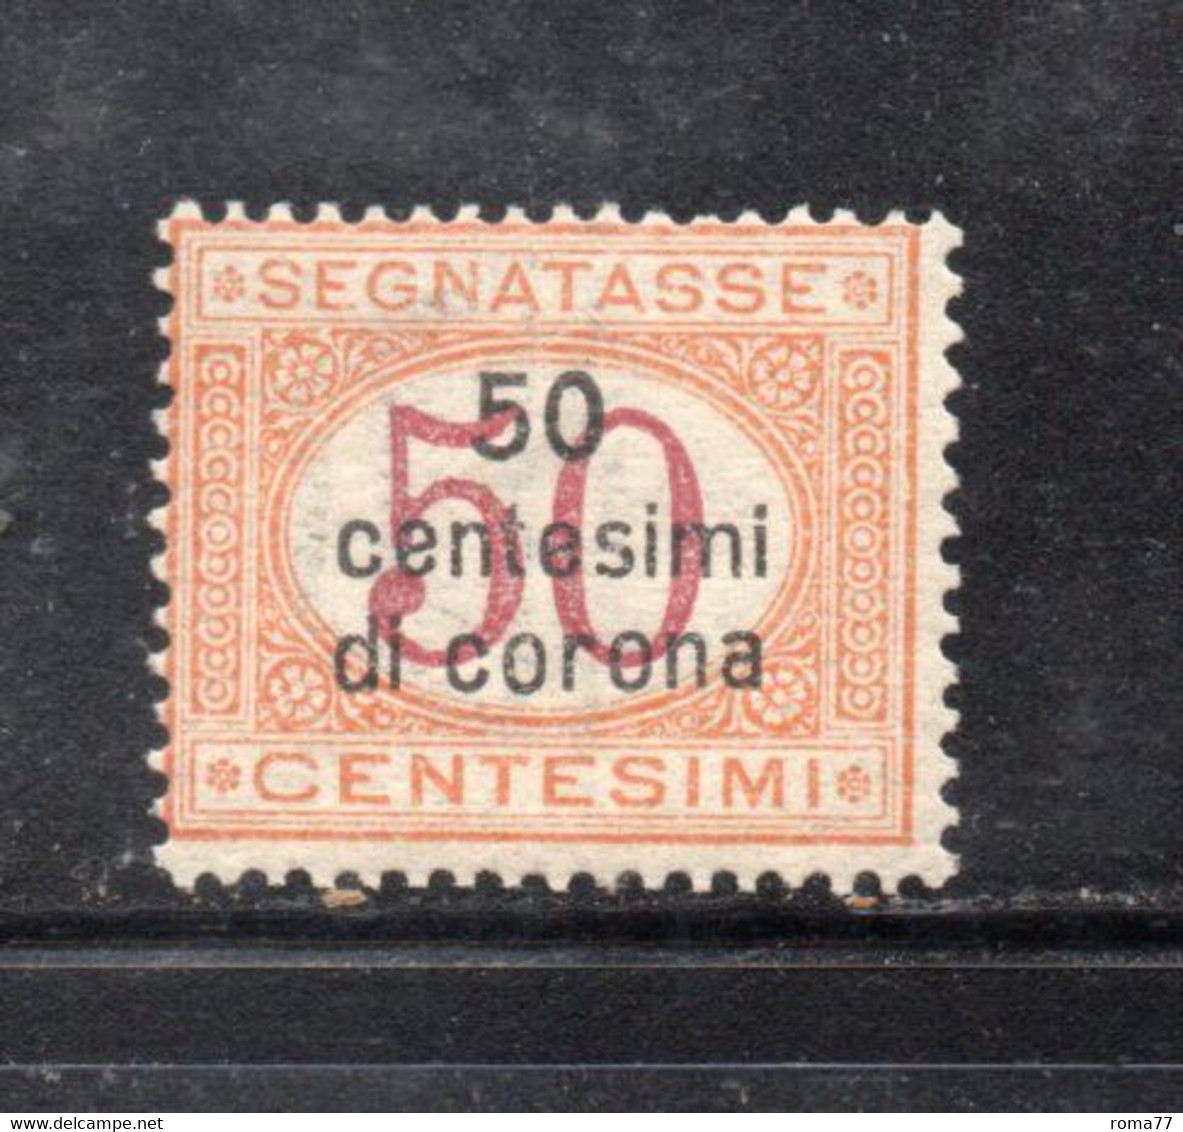 Y2274 - DALMAZIA 1922, Segnatasse Il N. 1  Con Gomma Integra  ***  MNH - Dalmatie